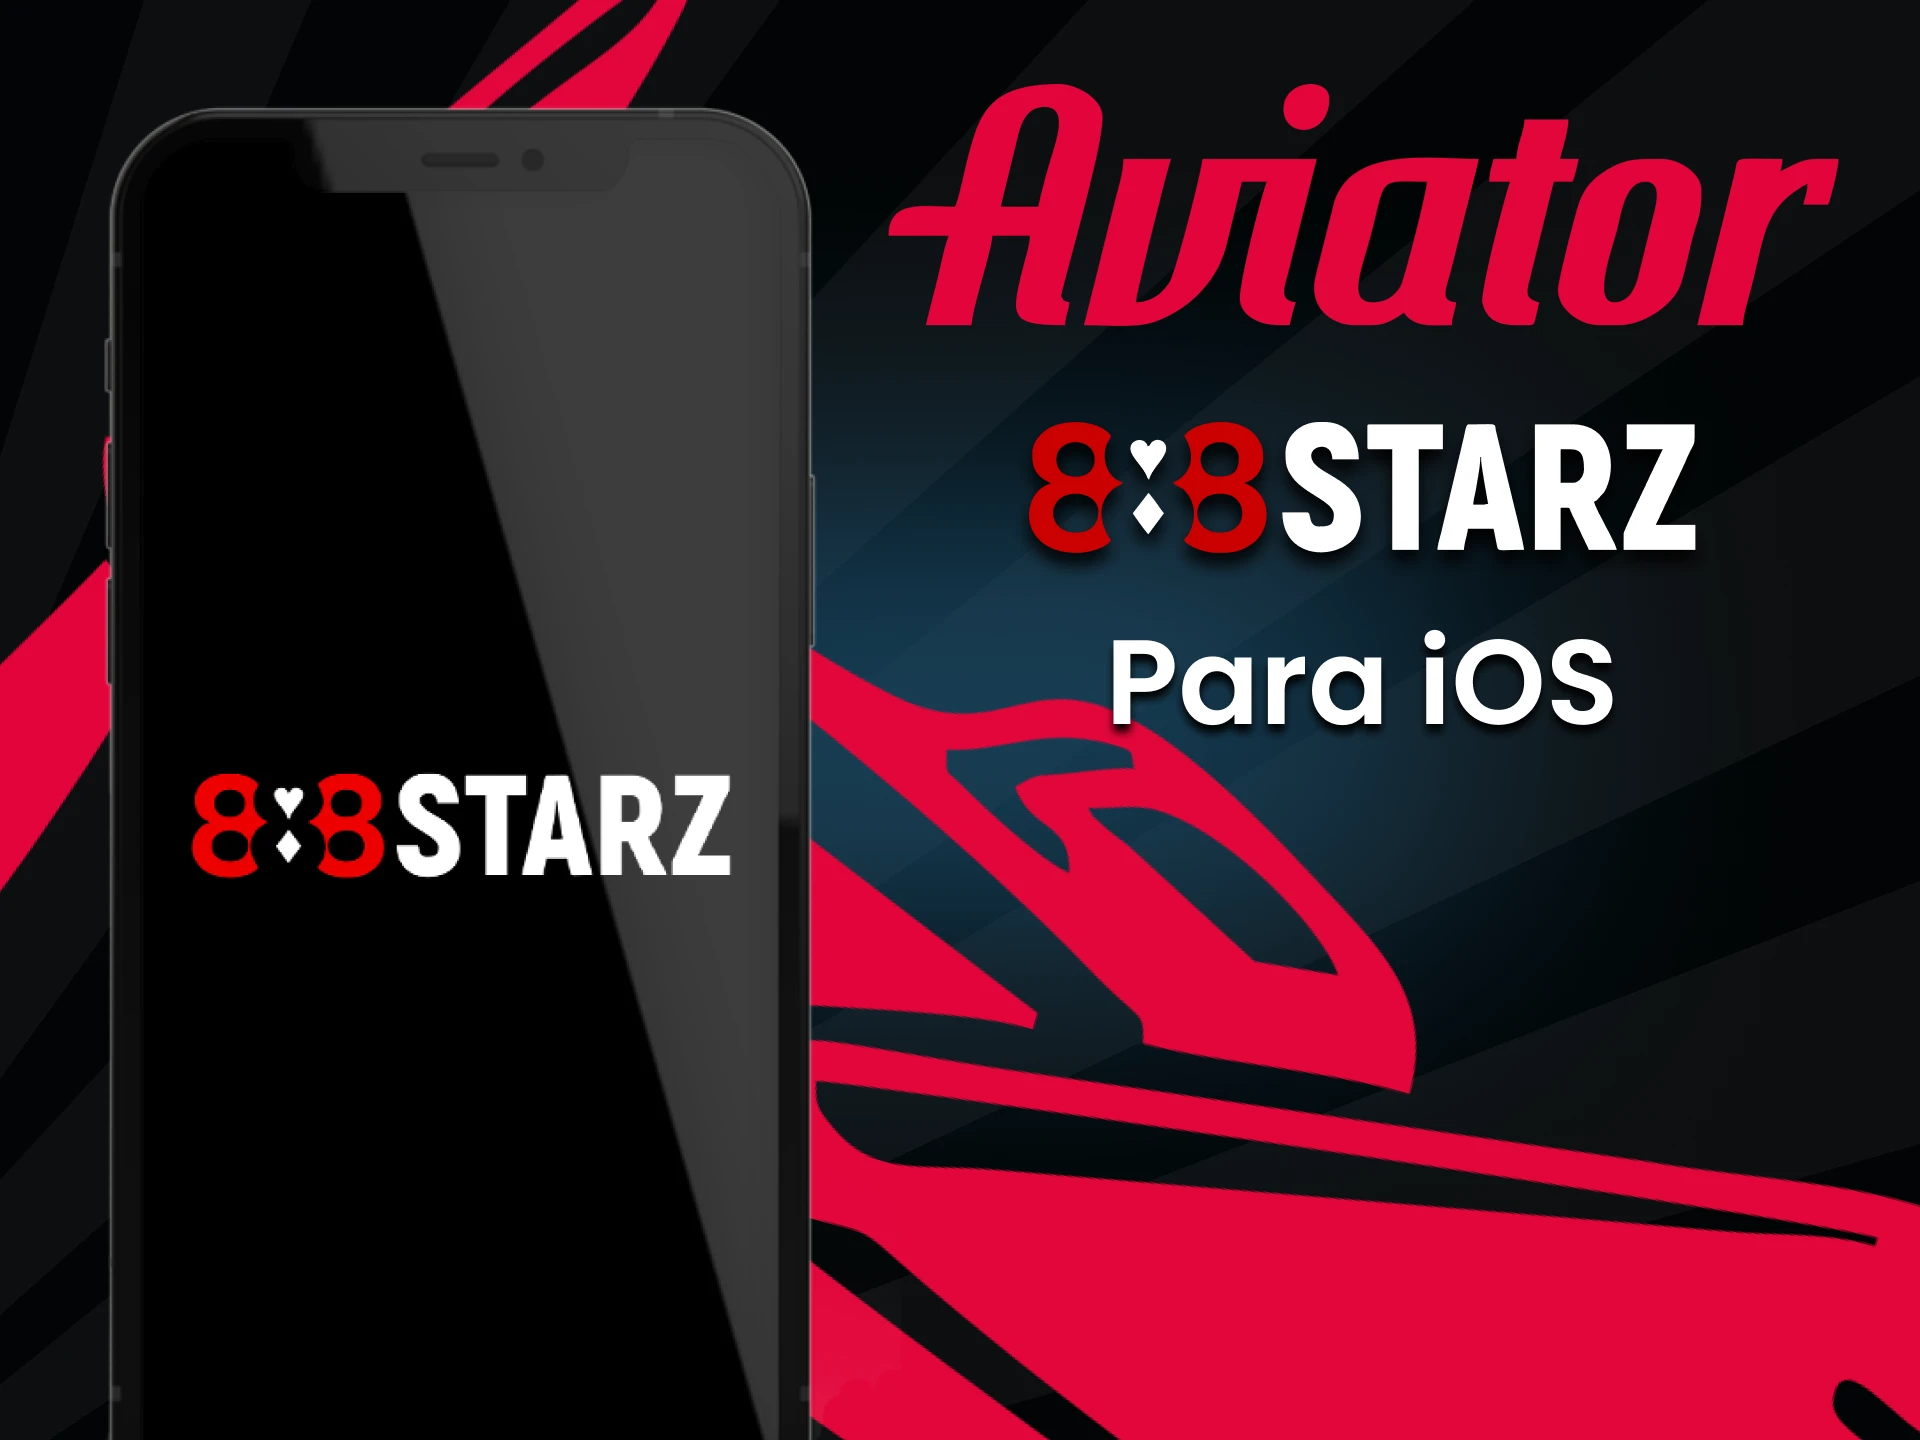 Baixe o aplicativo 888starz para jogar Aviator no iOS.